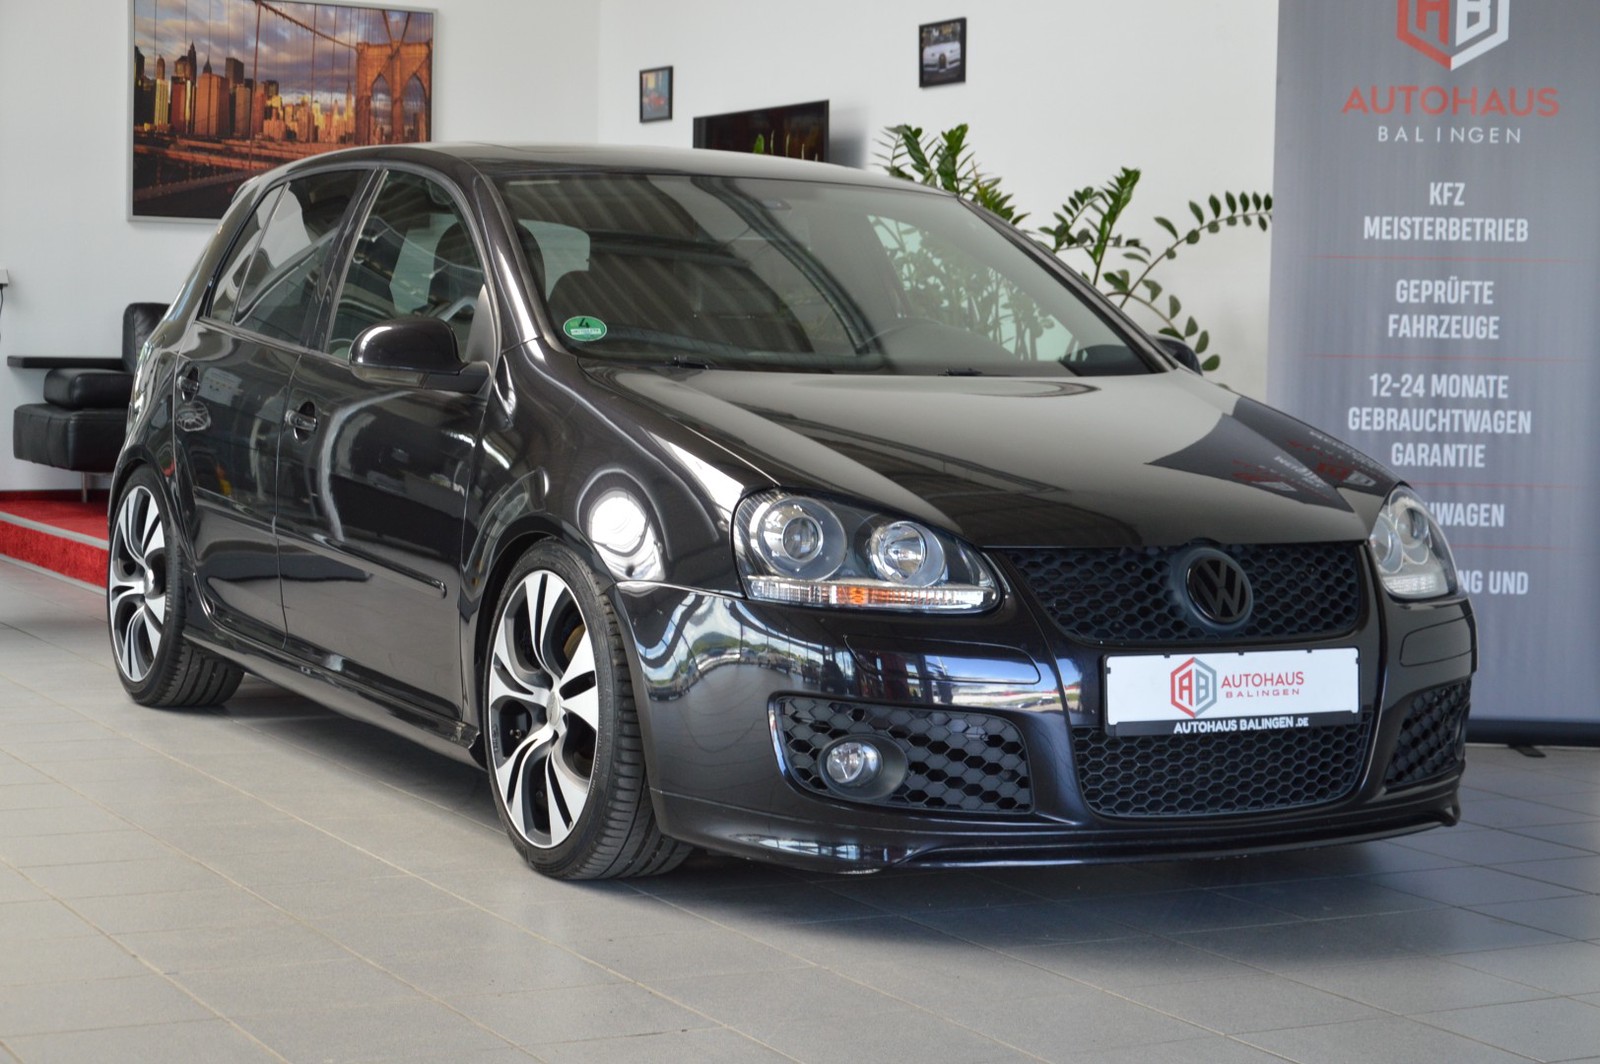 Volkswagen Golf V GTI Edition 30 gebraucht kaufen in Balingen Preis 7990 eur Int Nr 1565 